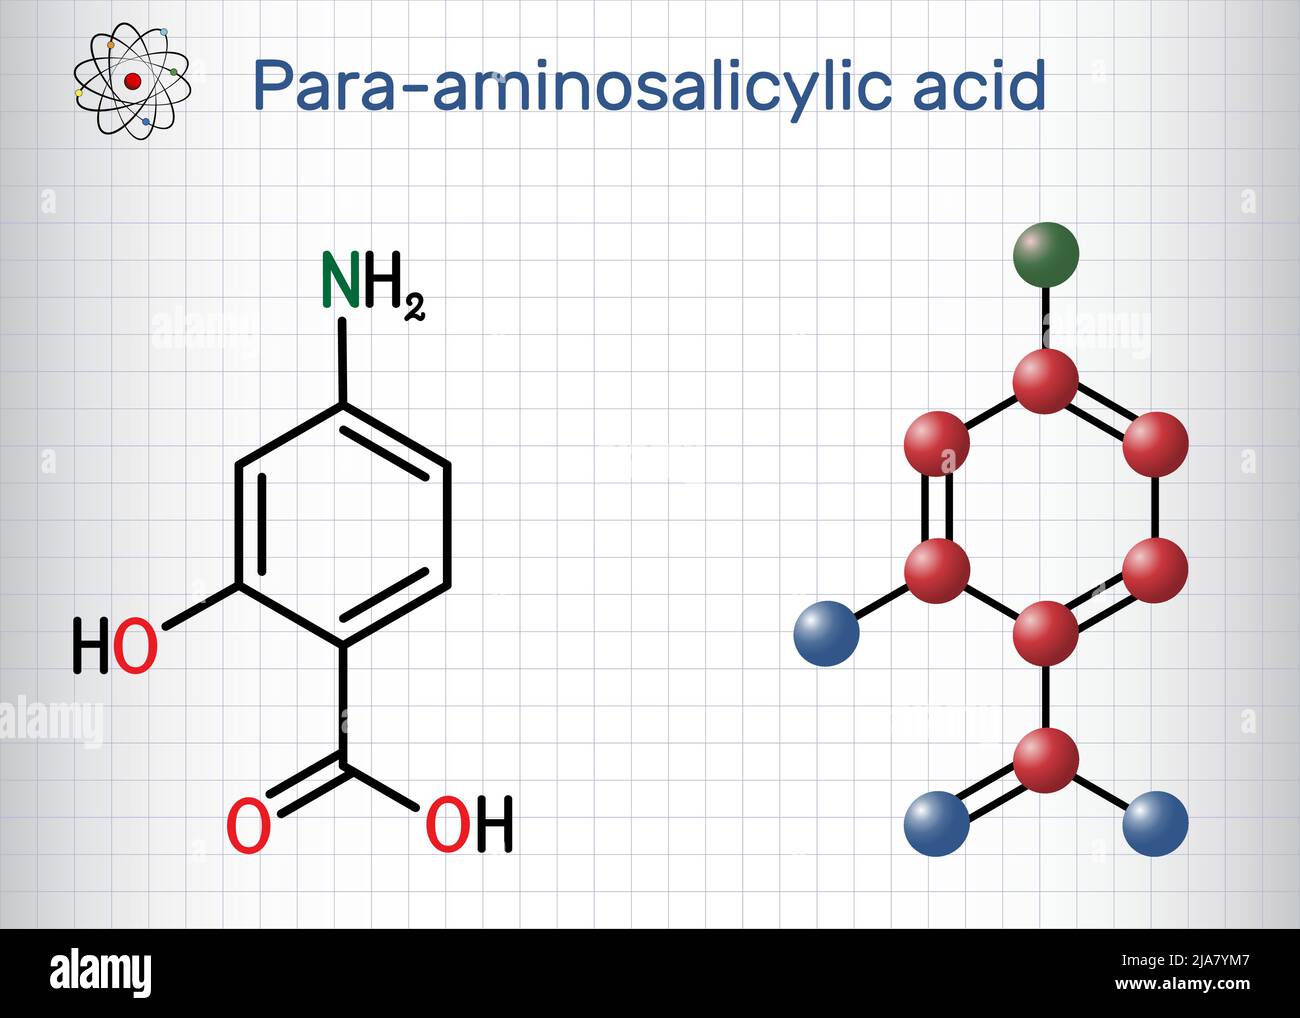 4-Aminosalicylsäure, para-Aminosalicylsäure oder PAS-Molekül. Es ist ein Antibiotikum, das zur Behandlung von Tuberkulose verwendet wird. Strukturelle chemische Formel, Molekül Mo Stock Vektor